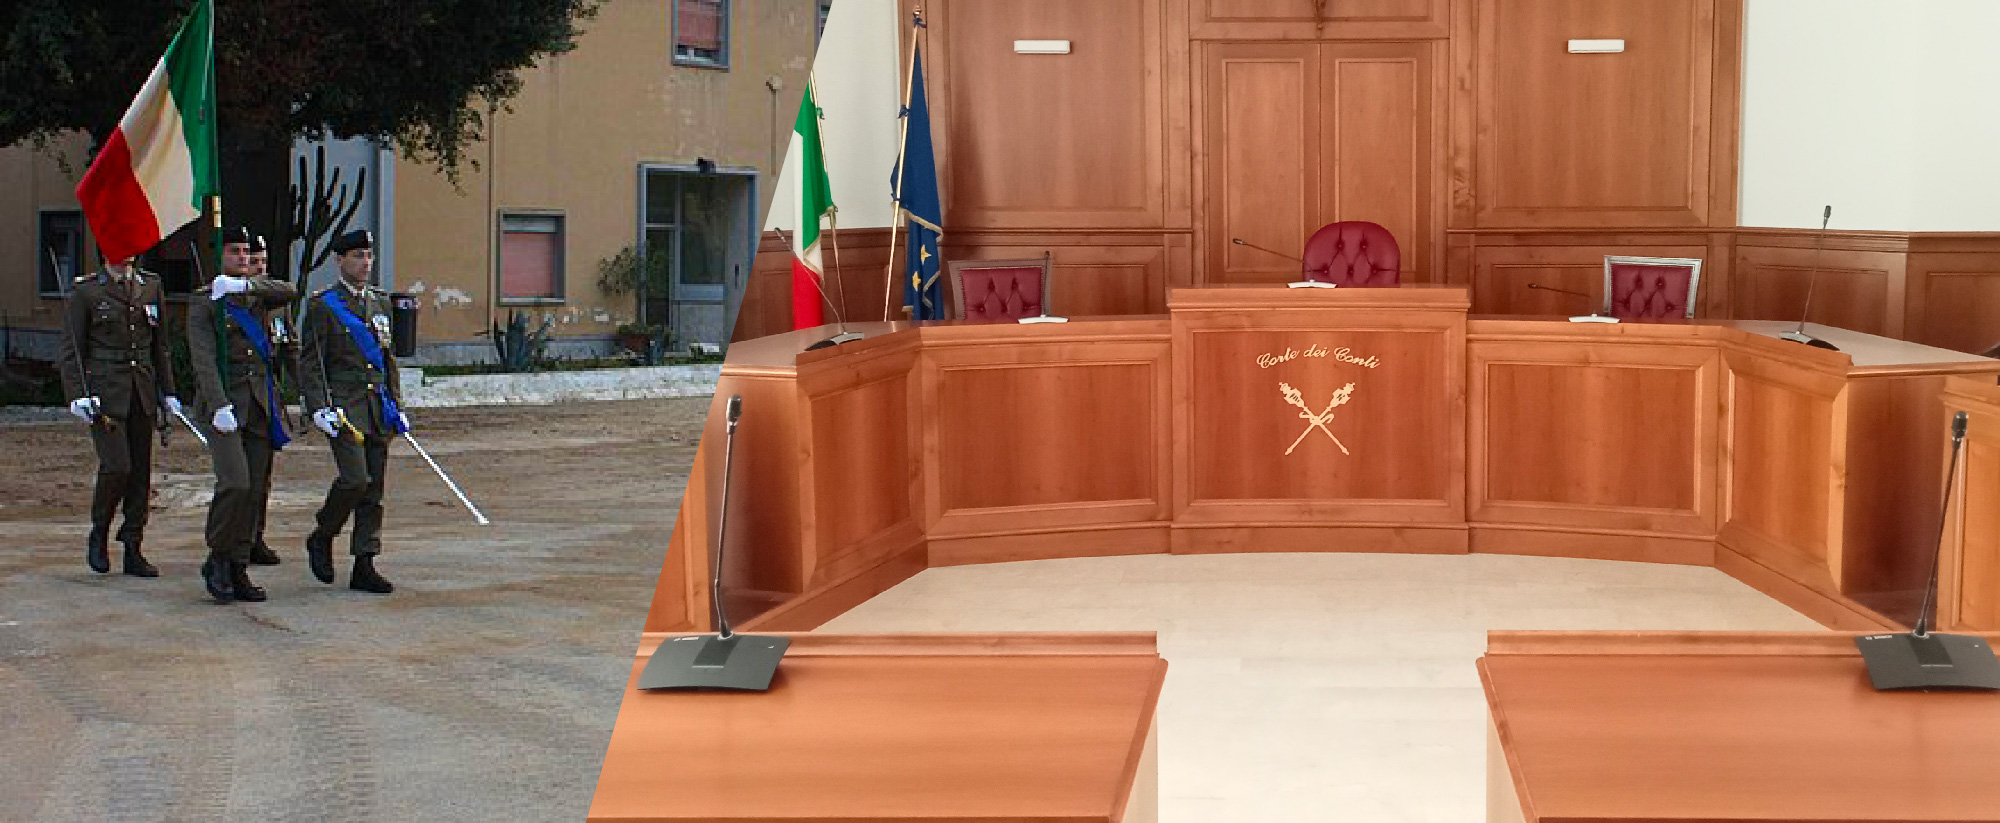 Militari rRiformati moltiplicatore udienza 10 aprile 2019 lo studio Chessa interviene davanti alle sezioni riunite centrali presso la Corte dei Conti Roma